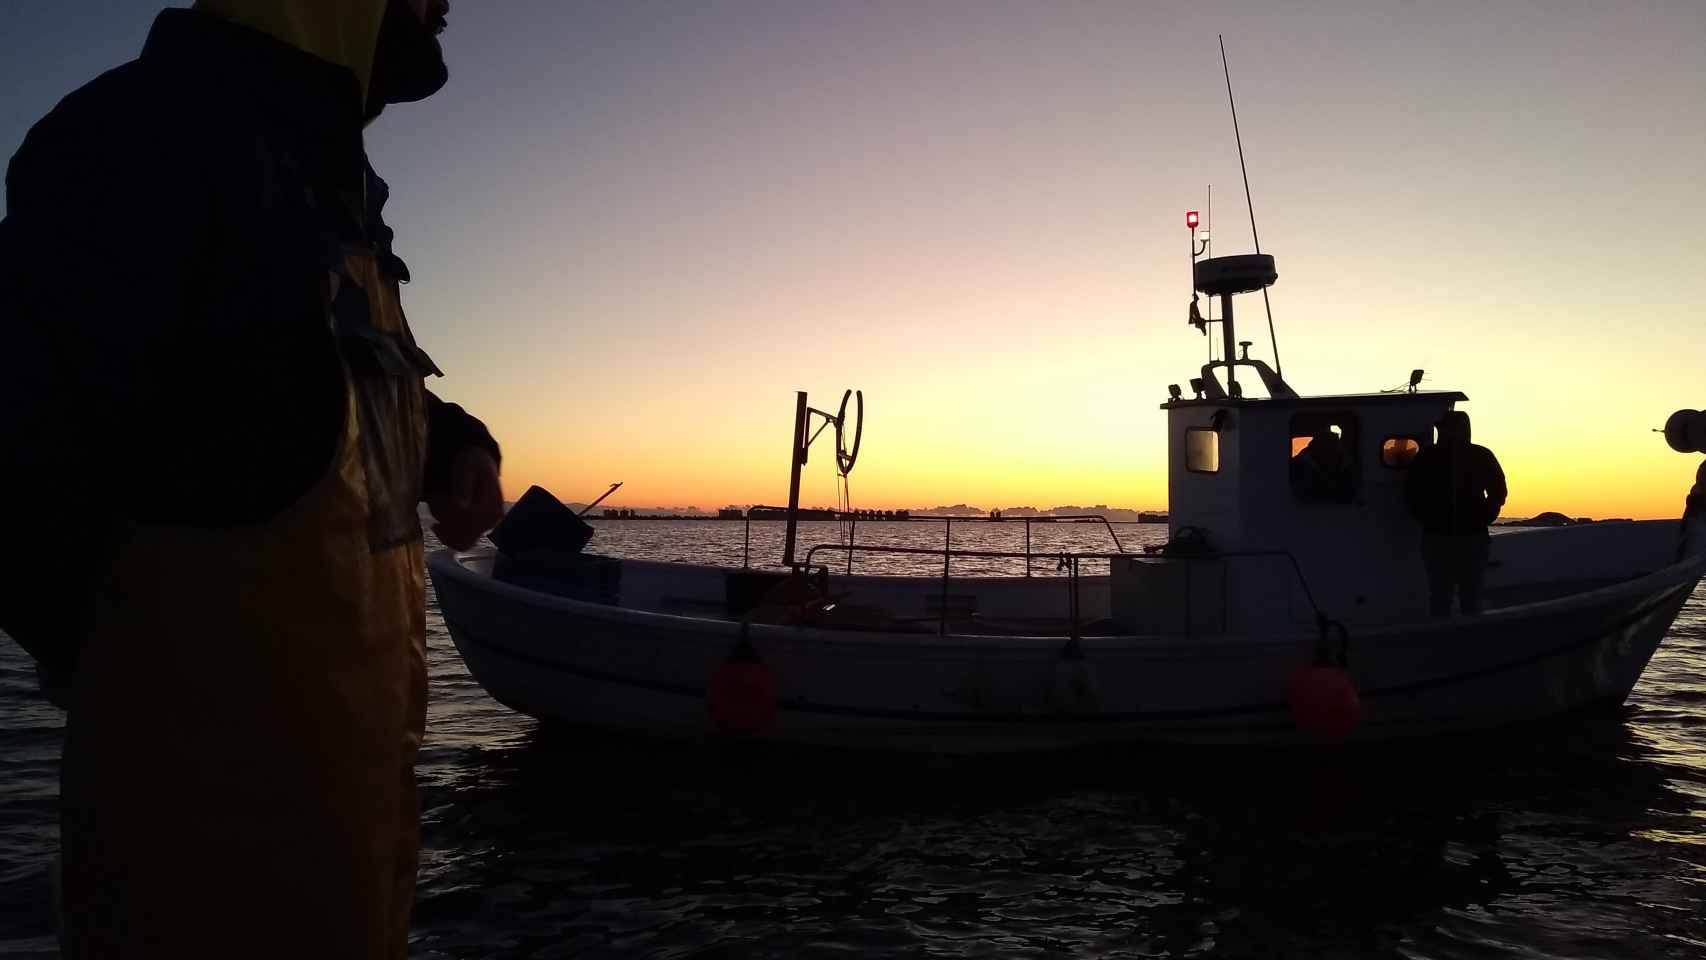 'Al amanecer': Los primeros rayos de sol que bañan el Mar Menor dibujan la silueta de Manolo, patrón de la 'Begoñita', charlando con otros pescadores que han salido a pescar lubina mediante métodos tradicionales.